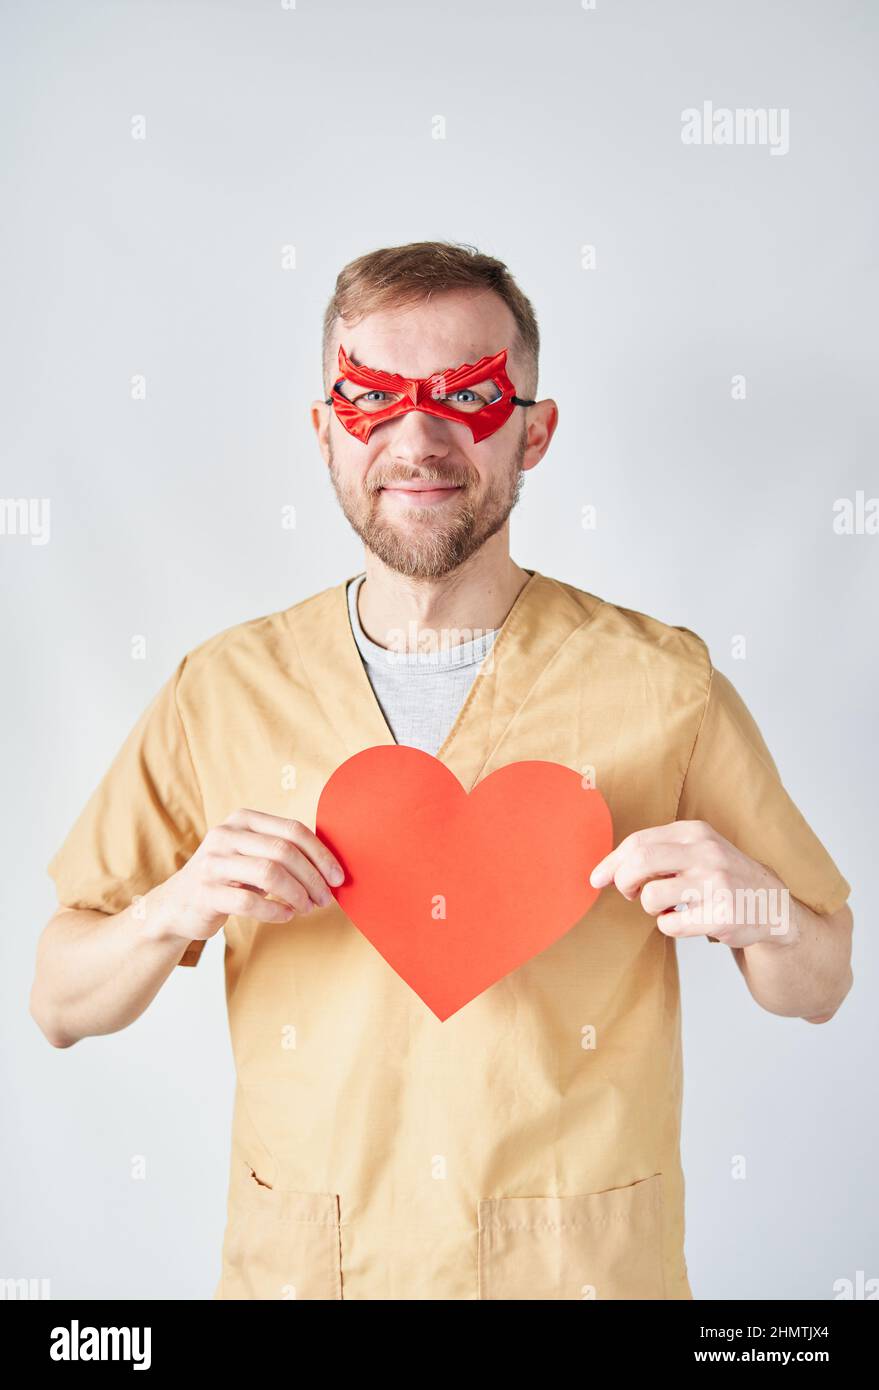 Allegro medico cardiologo maschile caucasico in uniforme medica e maschera di supereroe rosso con carta rossa a forma di cuore. Medico chirurgo adulto in ospedale che si posa sopra la parete. Foto di alta qualità Foto Stock